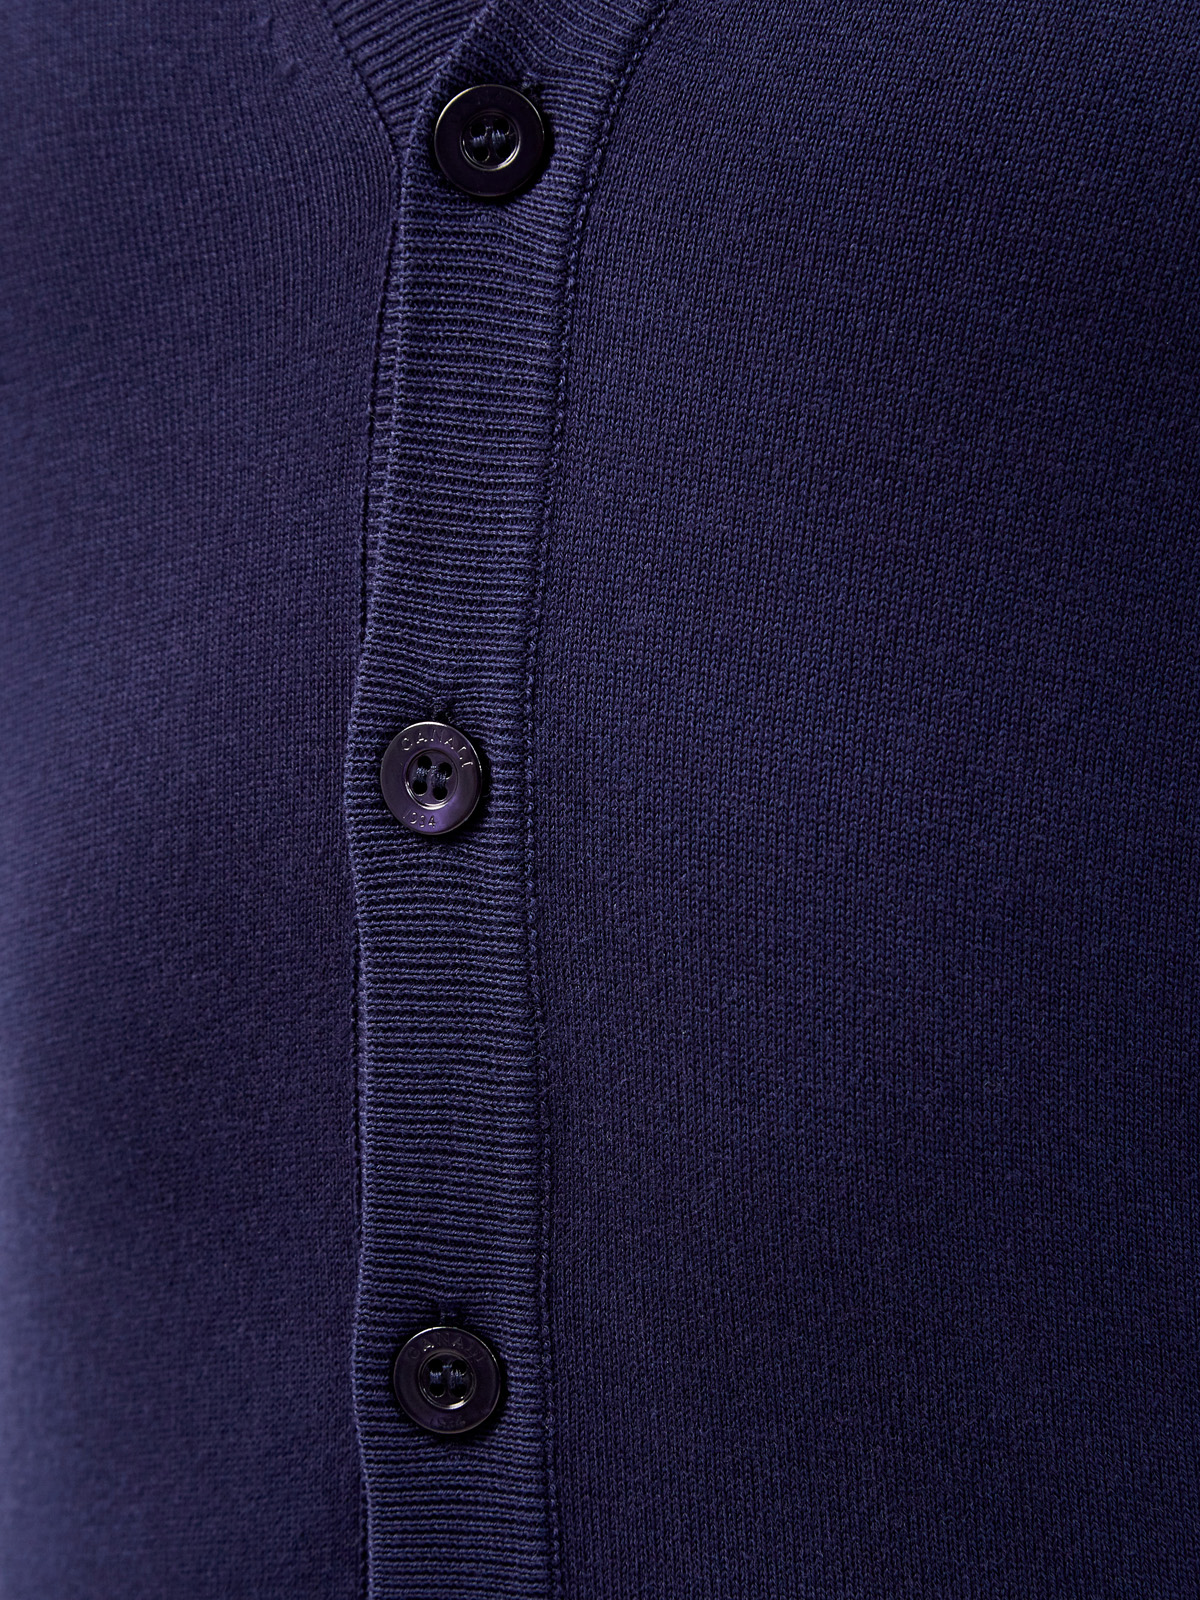 Кардиган из тонкой хлопковой пряжи с застежкой на пуговицы CANALI, цвет синий, размер 50;52;54;56;48 - фото 5